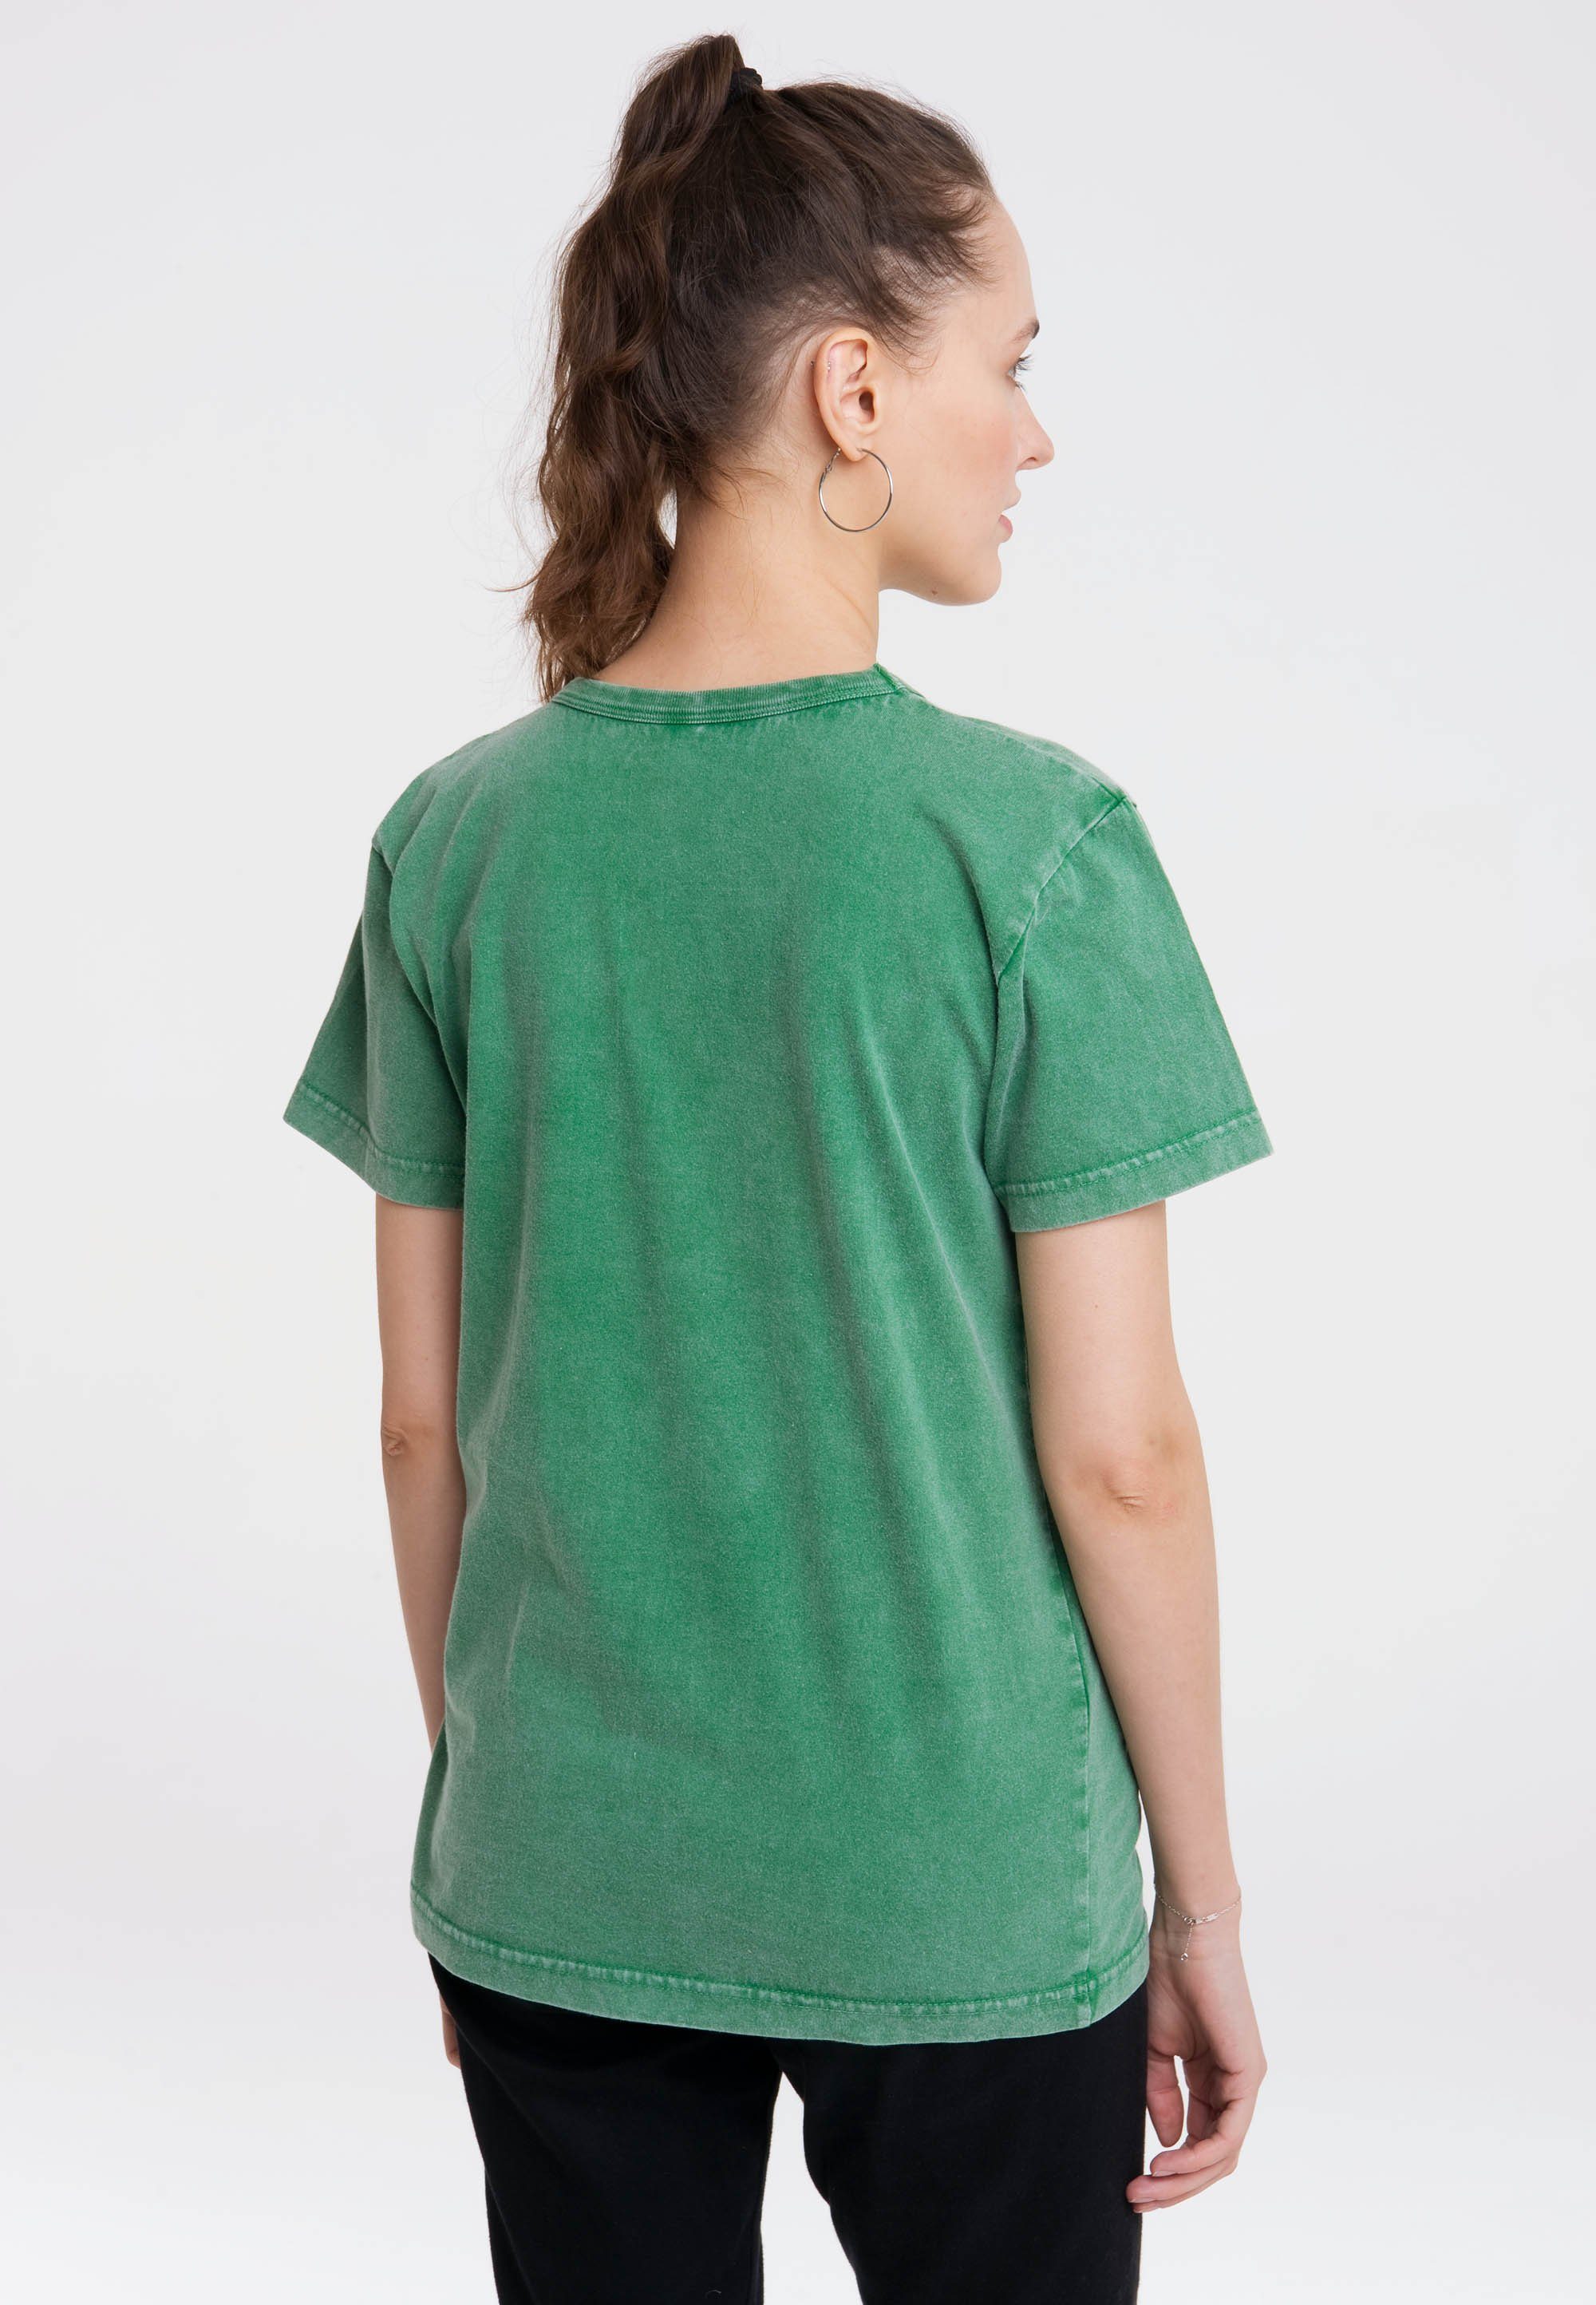 lizenziertem T-Shirt Maulwurf Der kleine grün LOGOSHIRT mit Print